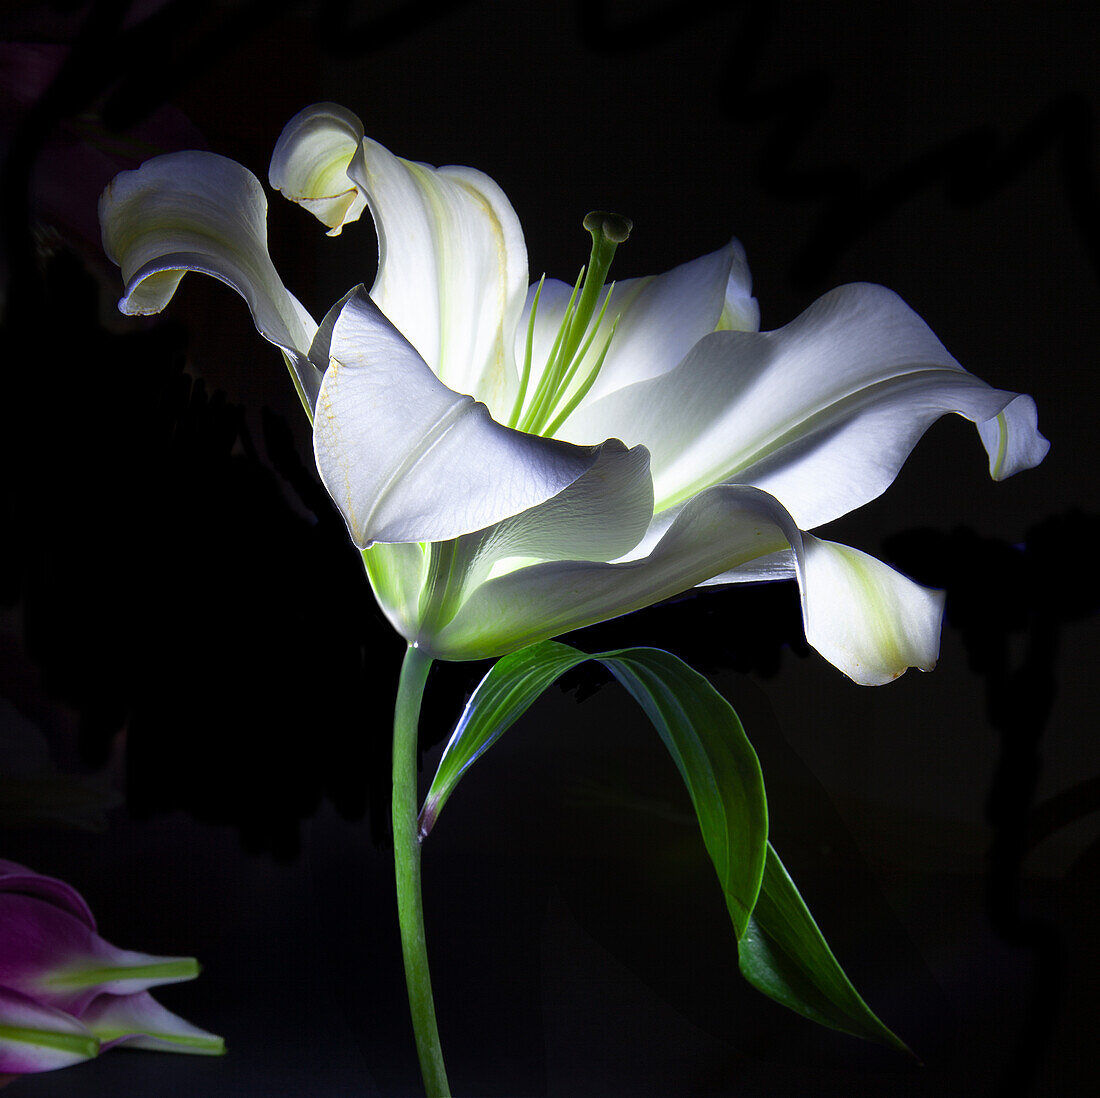 Weiße Lilie (Lilium) in dramatischer Beleuchtung